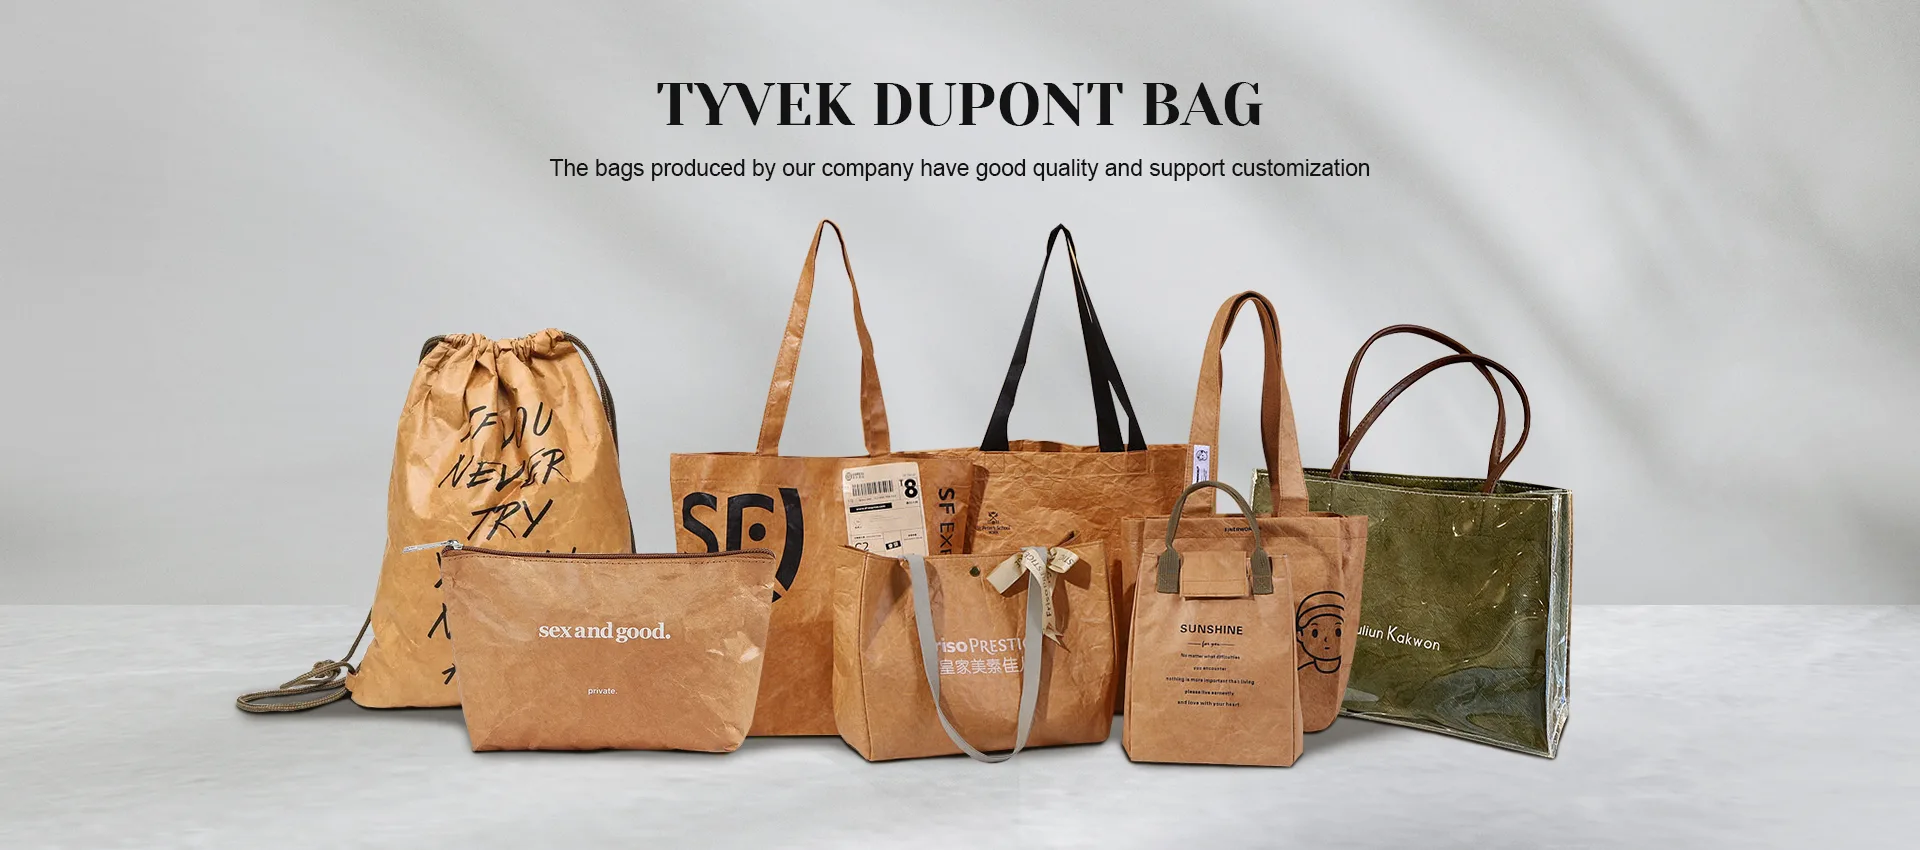 Hersteller von Tyvek-Dupont-Taschen in China